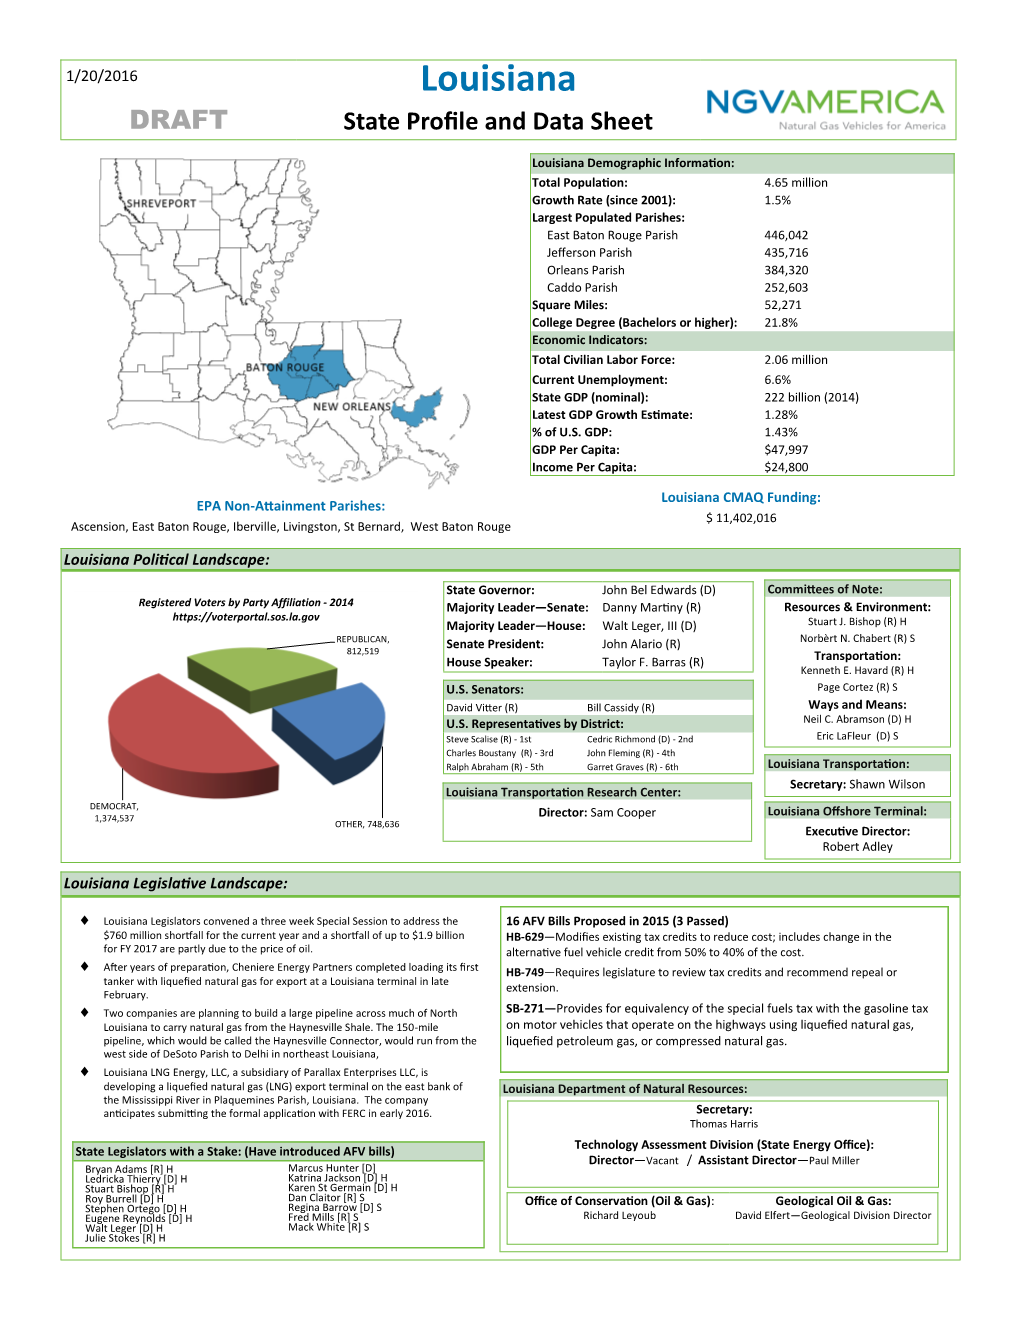 Louisiana DRAFT State Profile and Data Sheet